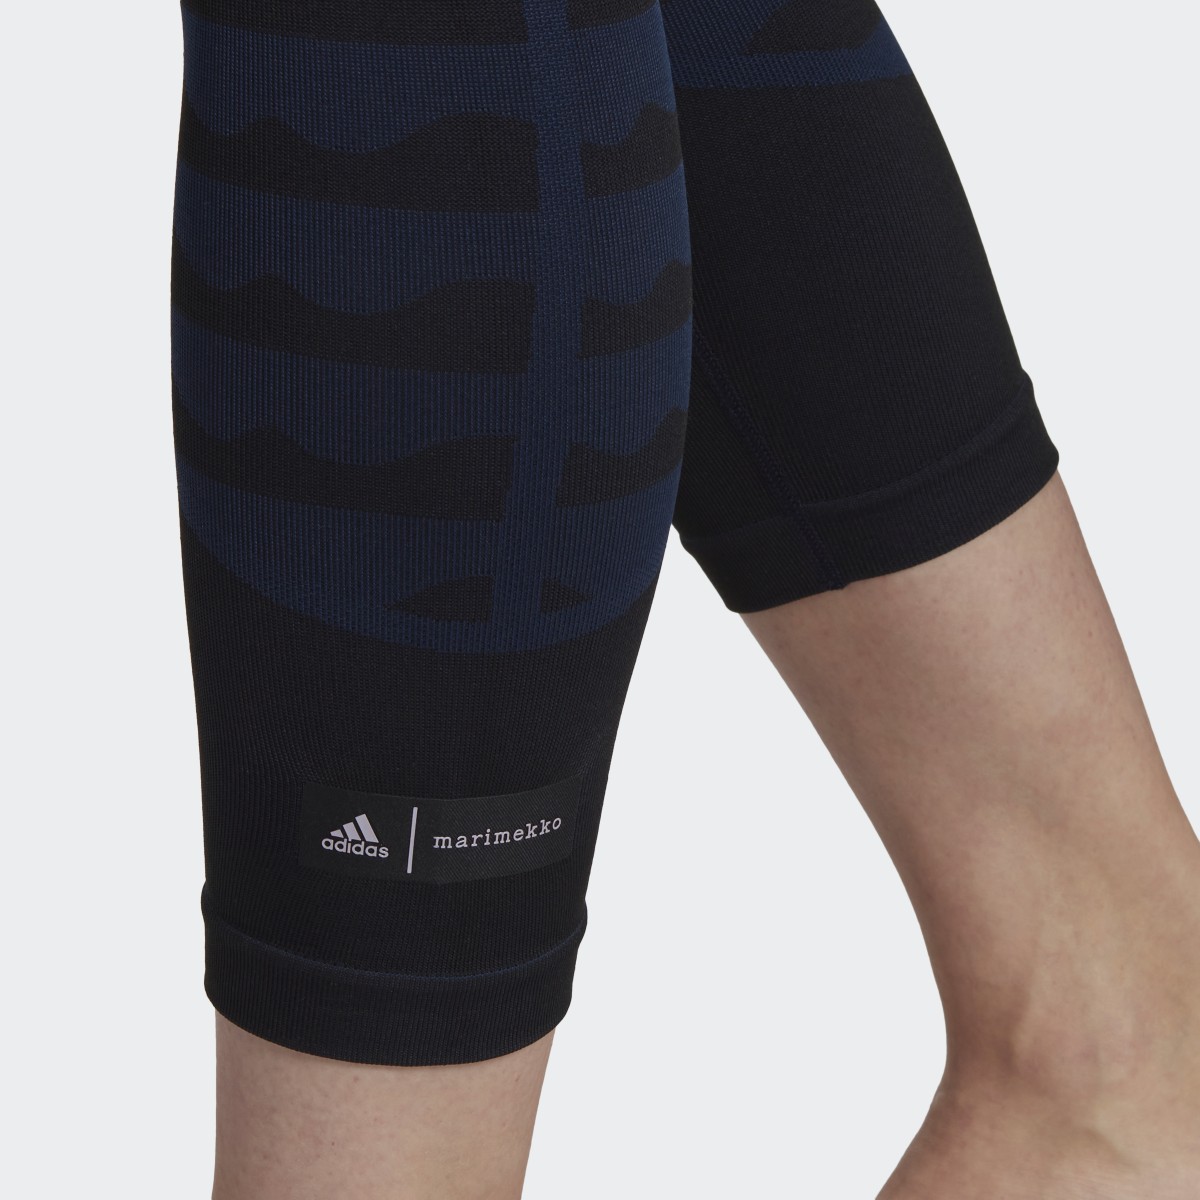 Adidas Marimekko AEROKNIT 7/8 Leggings. 5